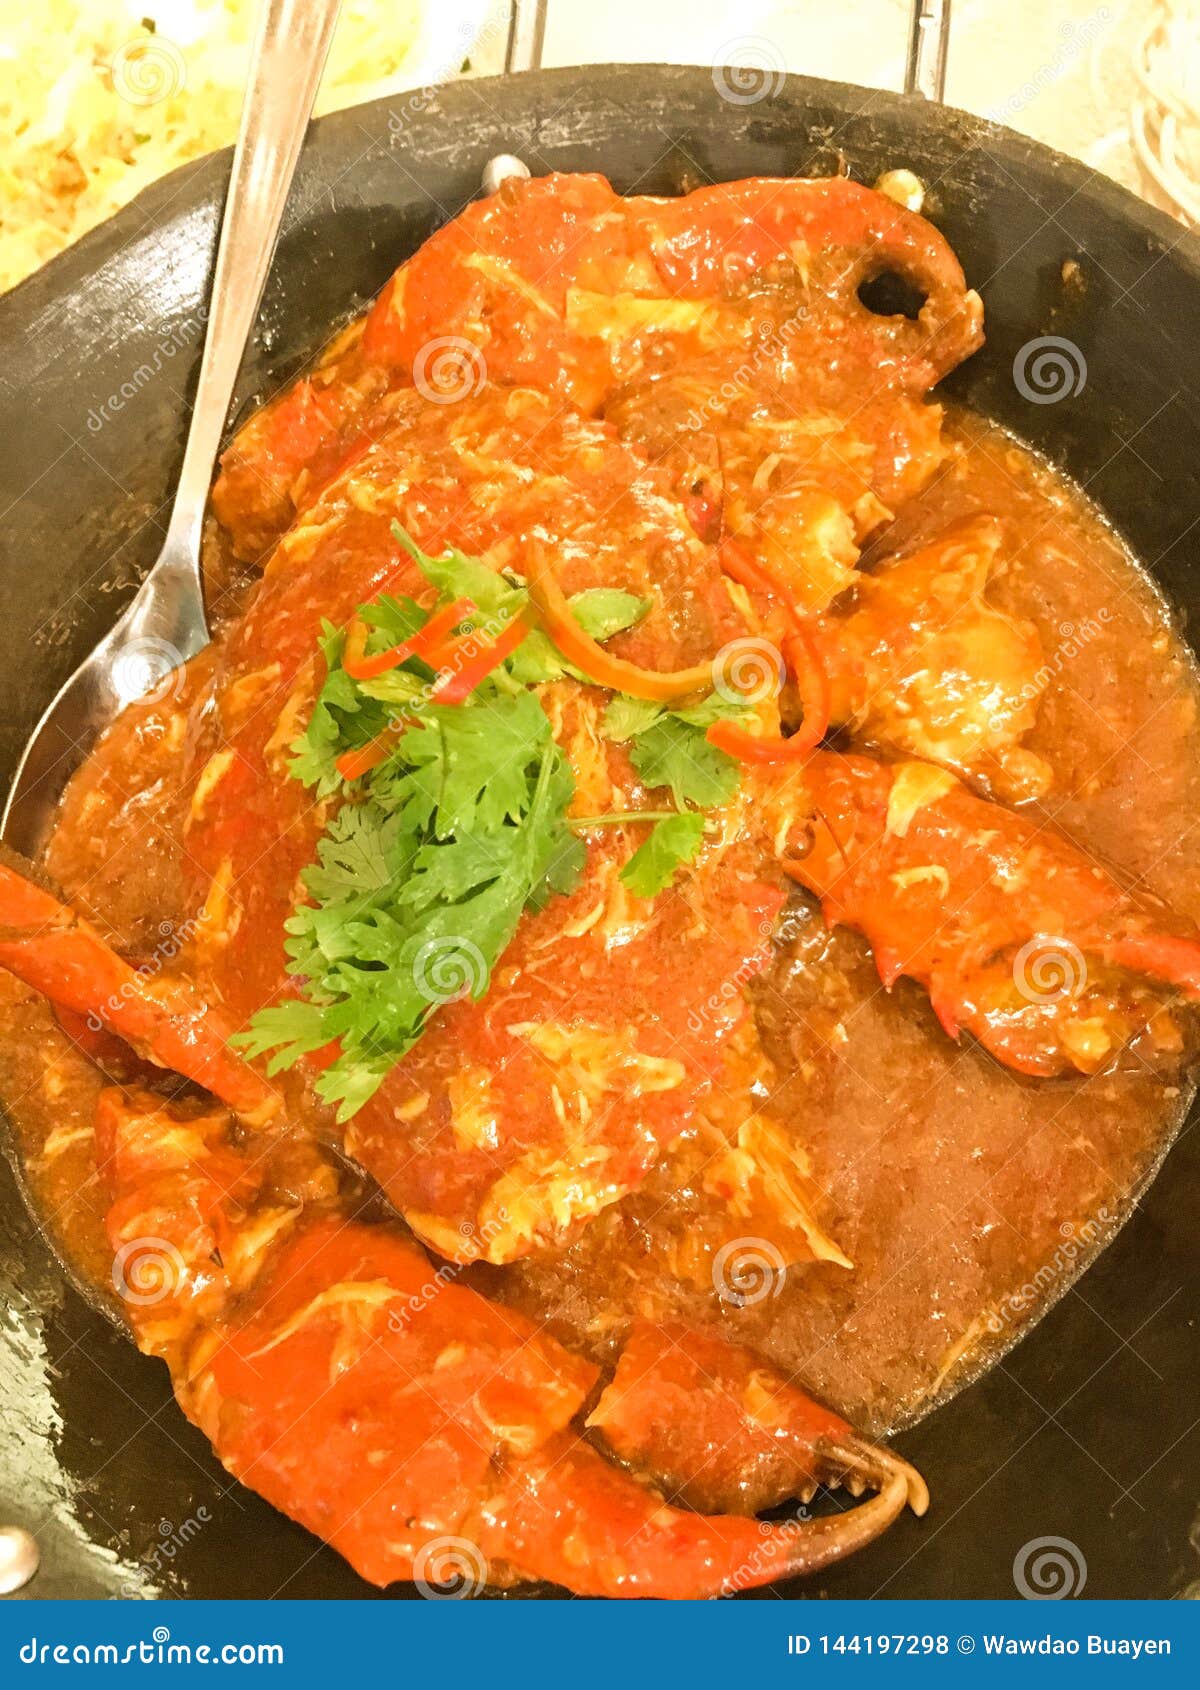 Best Singapore Chilli Crab Sauce In Singaporean Style Dip